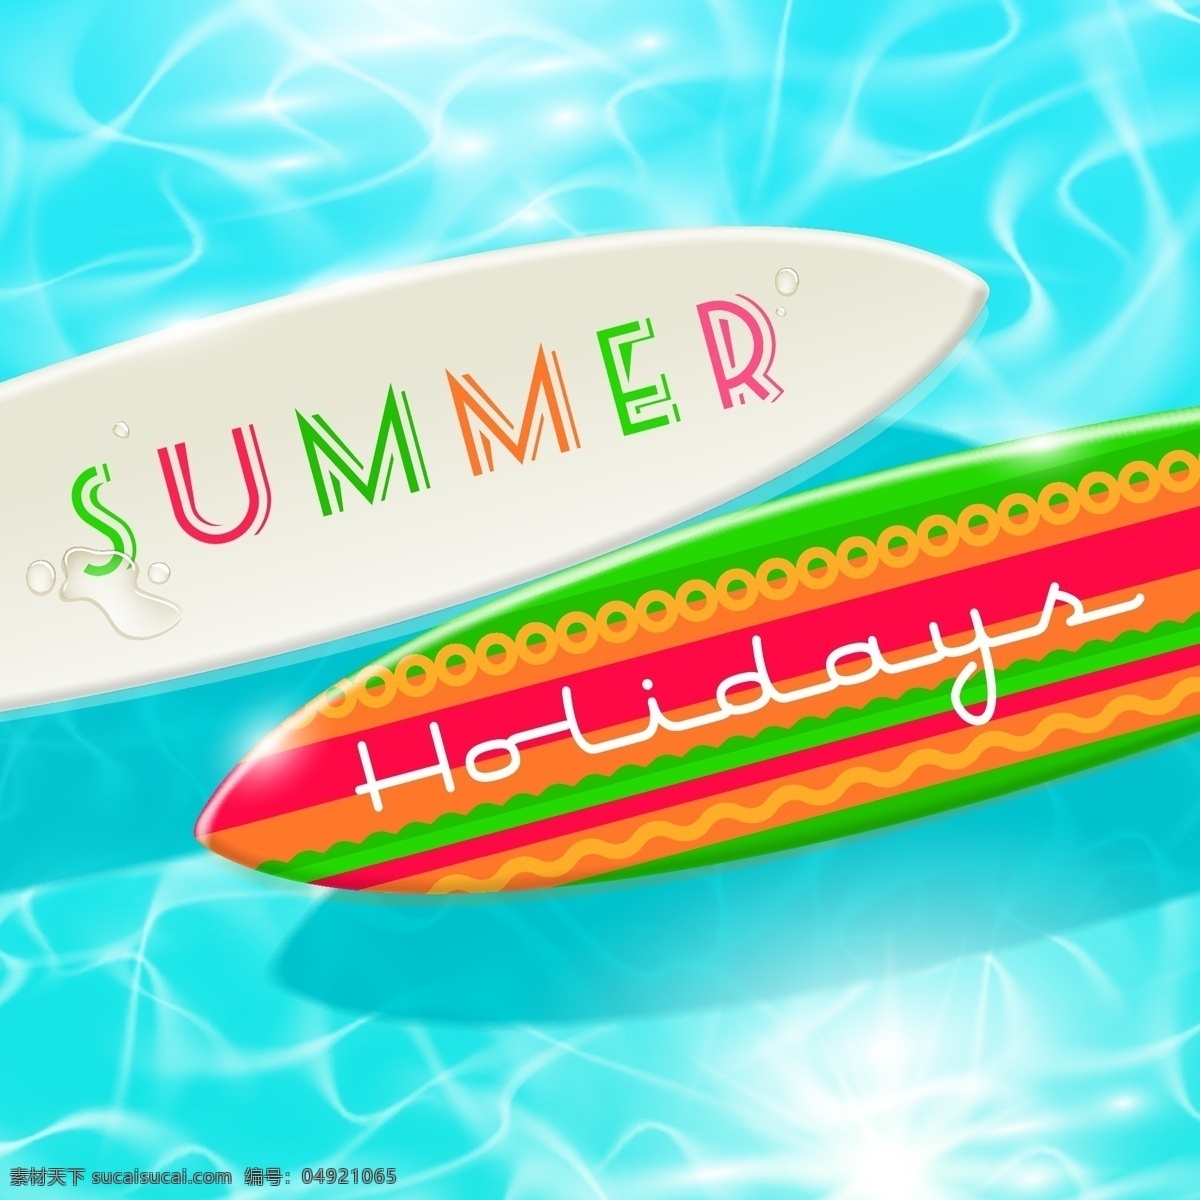 夏天 夏天的假期 假期 暑假eps eps向量 暑假 免费 矢量图 向量 青色 天蓝色